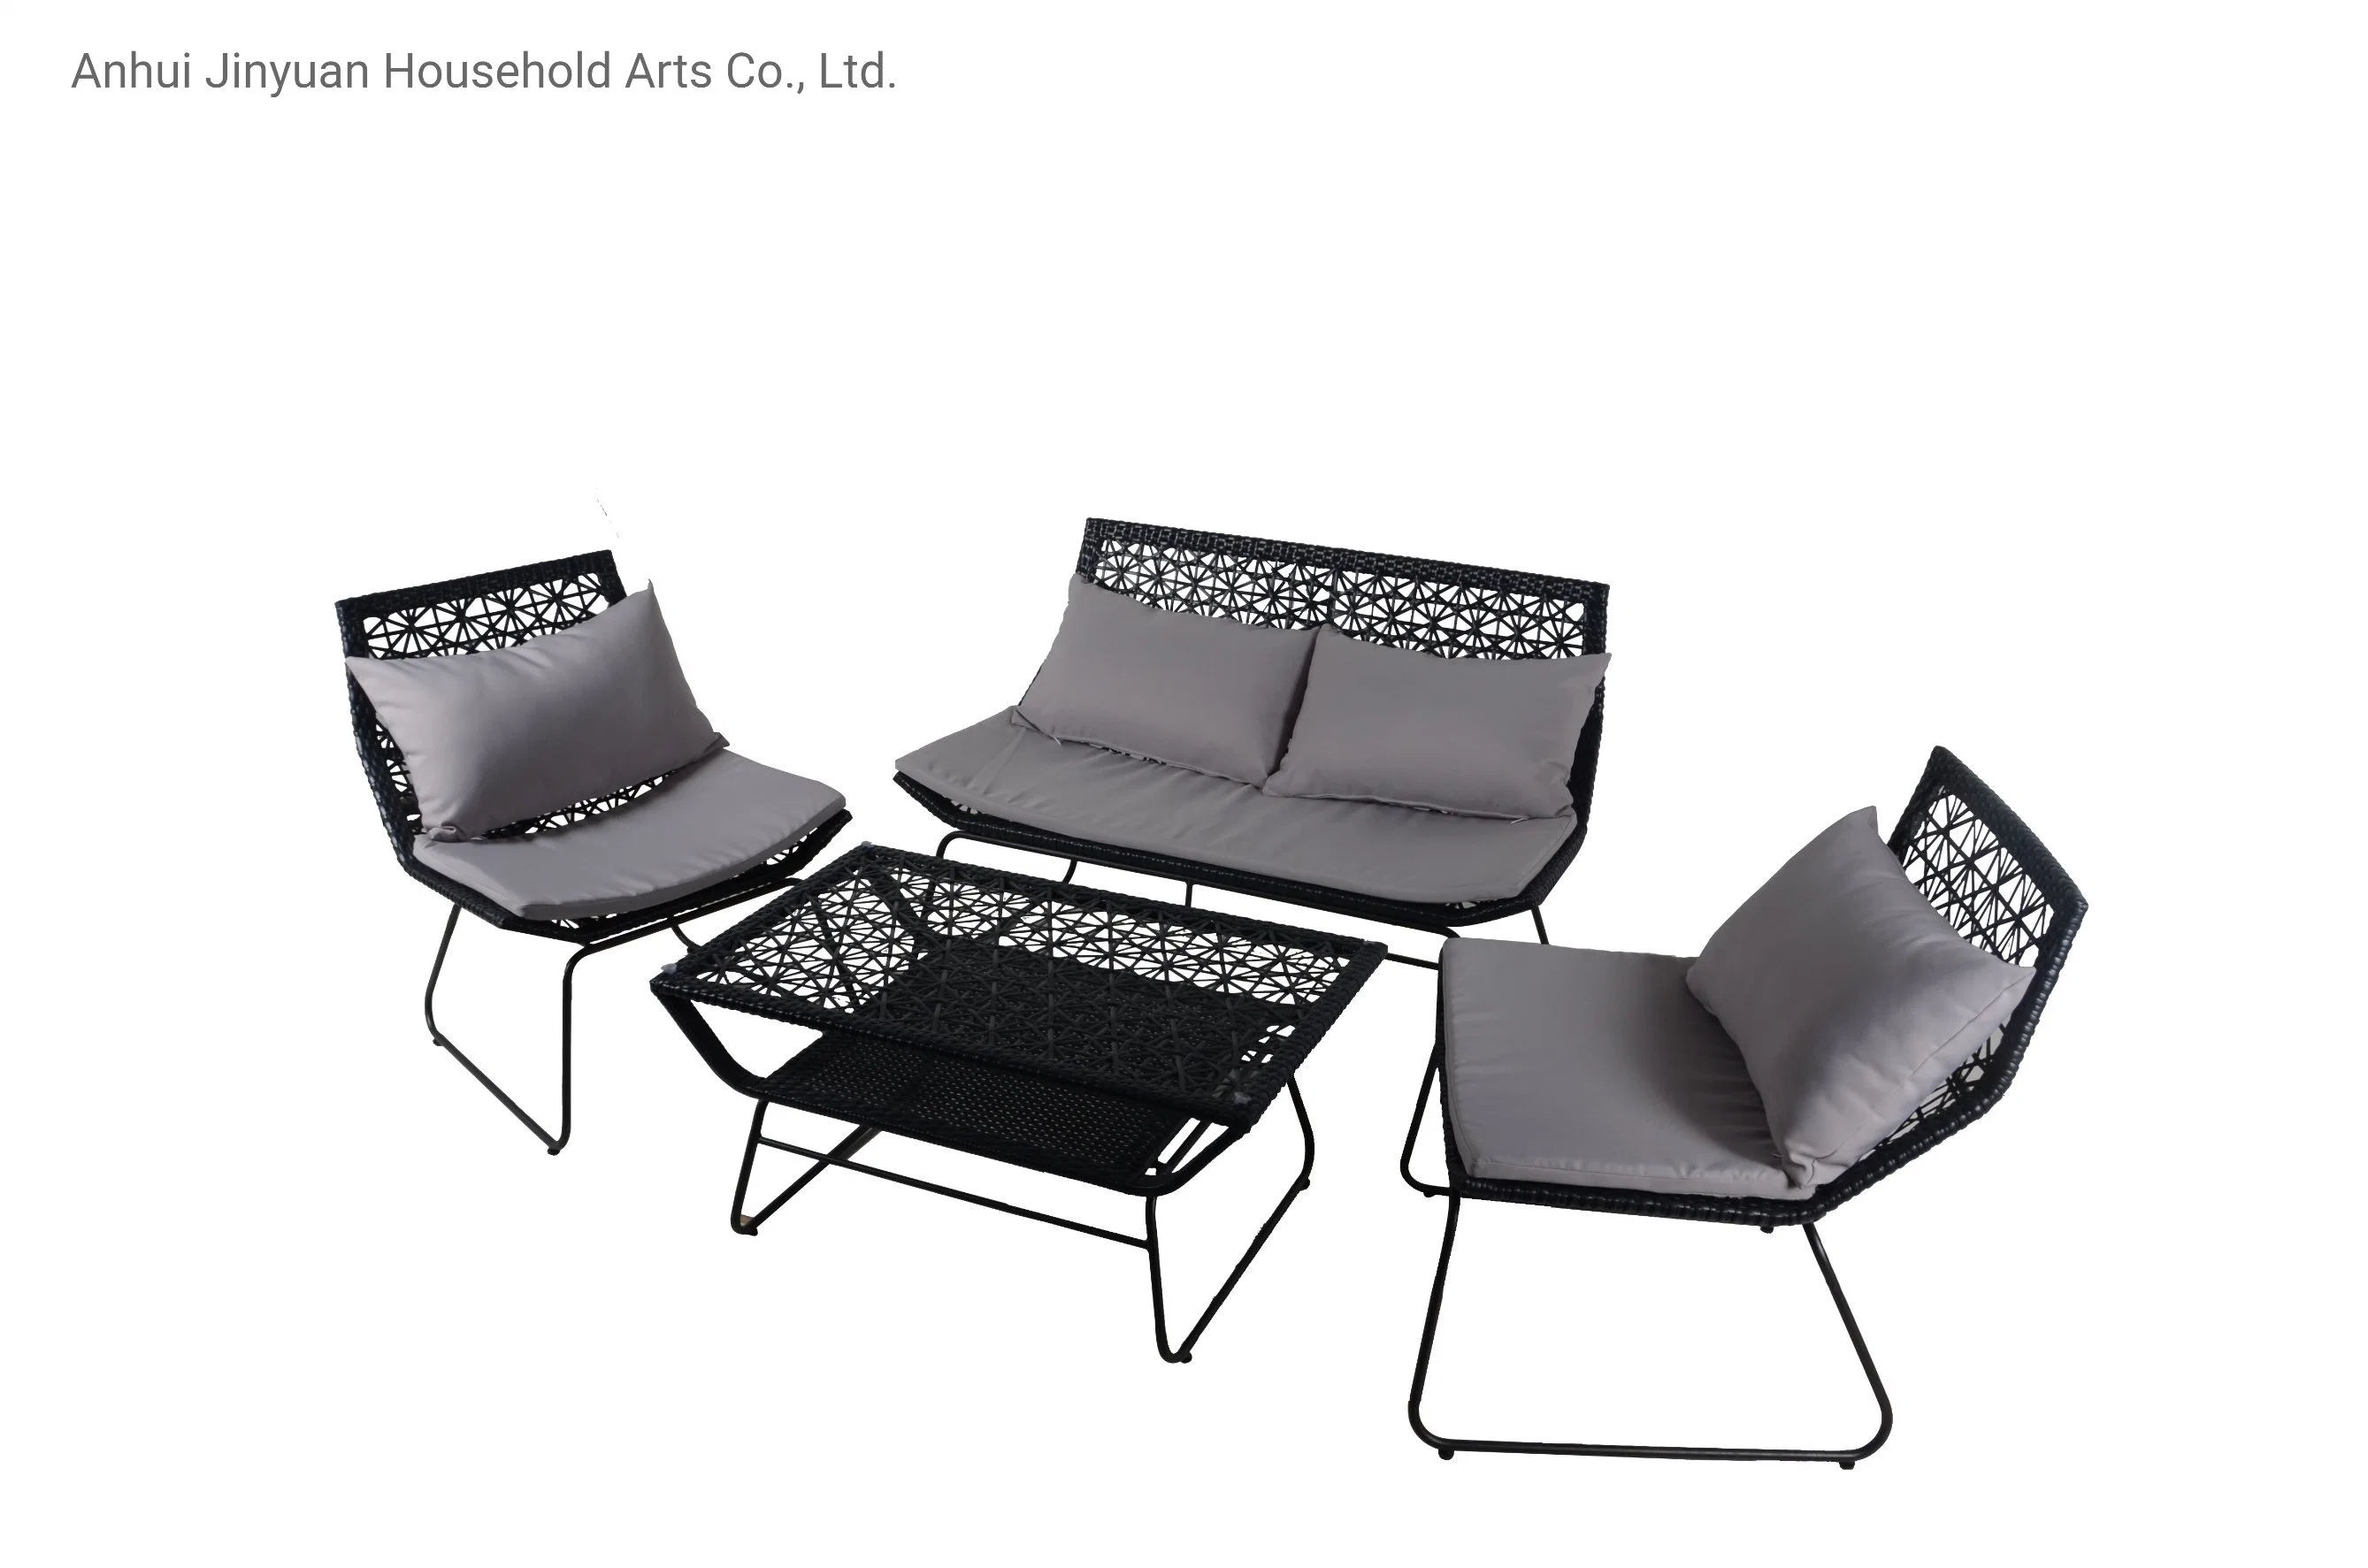 Silla de jardín Muebles de hogar mesas y sillas al aire libre